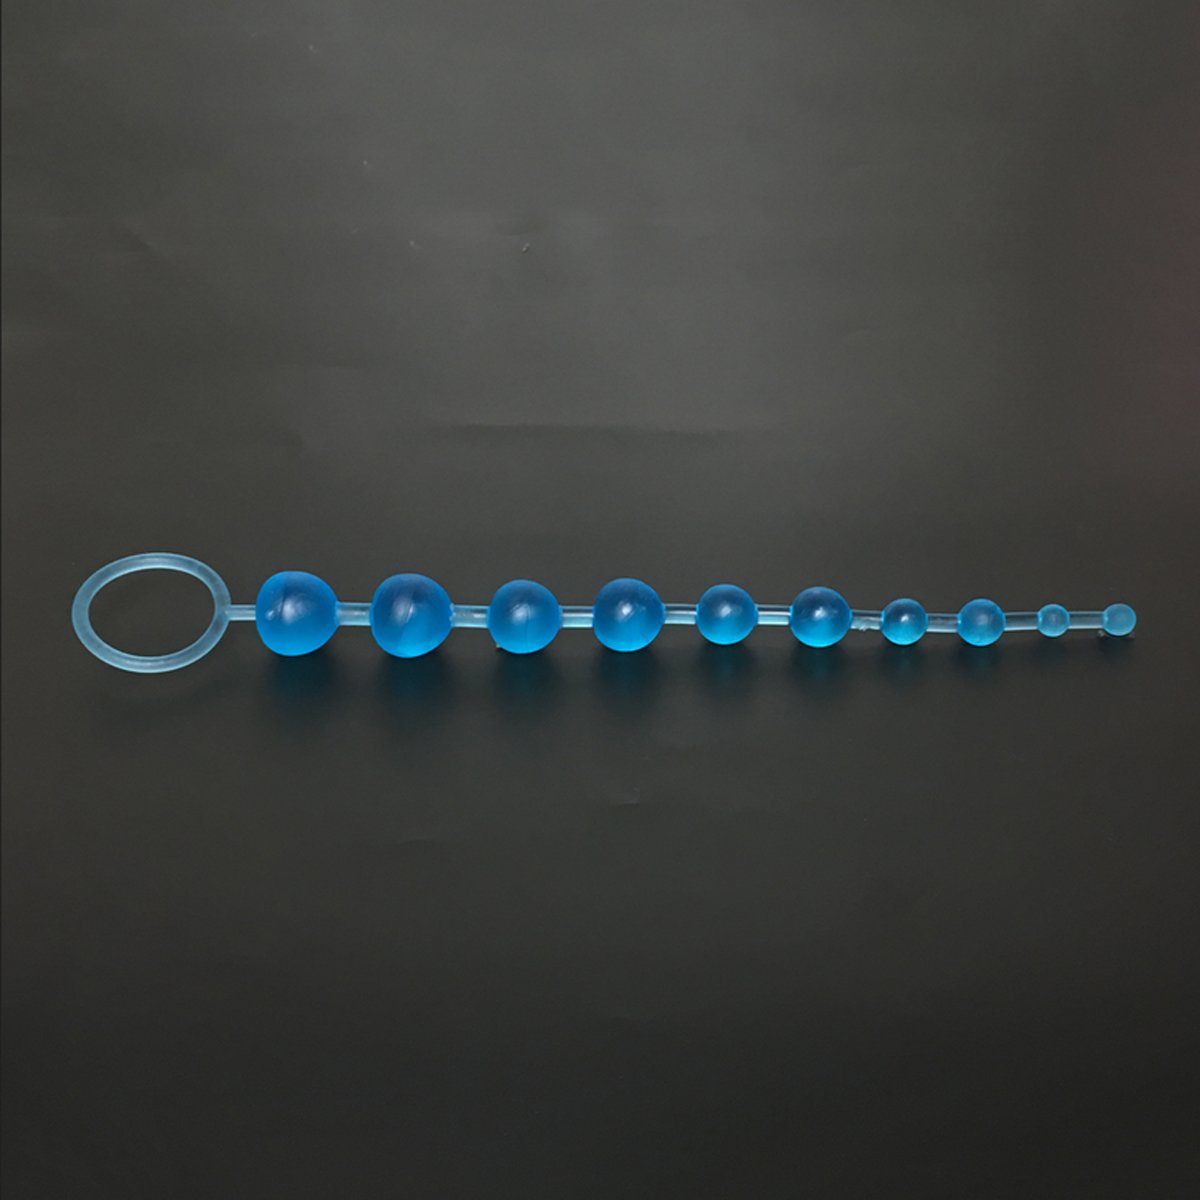 TPFSecret Analkette für Männer und Frauen, ergonomische große 29,5cm Anal Kette, mit 10 Perlen, und unterschiedlichem Durchmesser - Farbe: Blau | Anal-Ketten